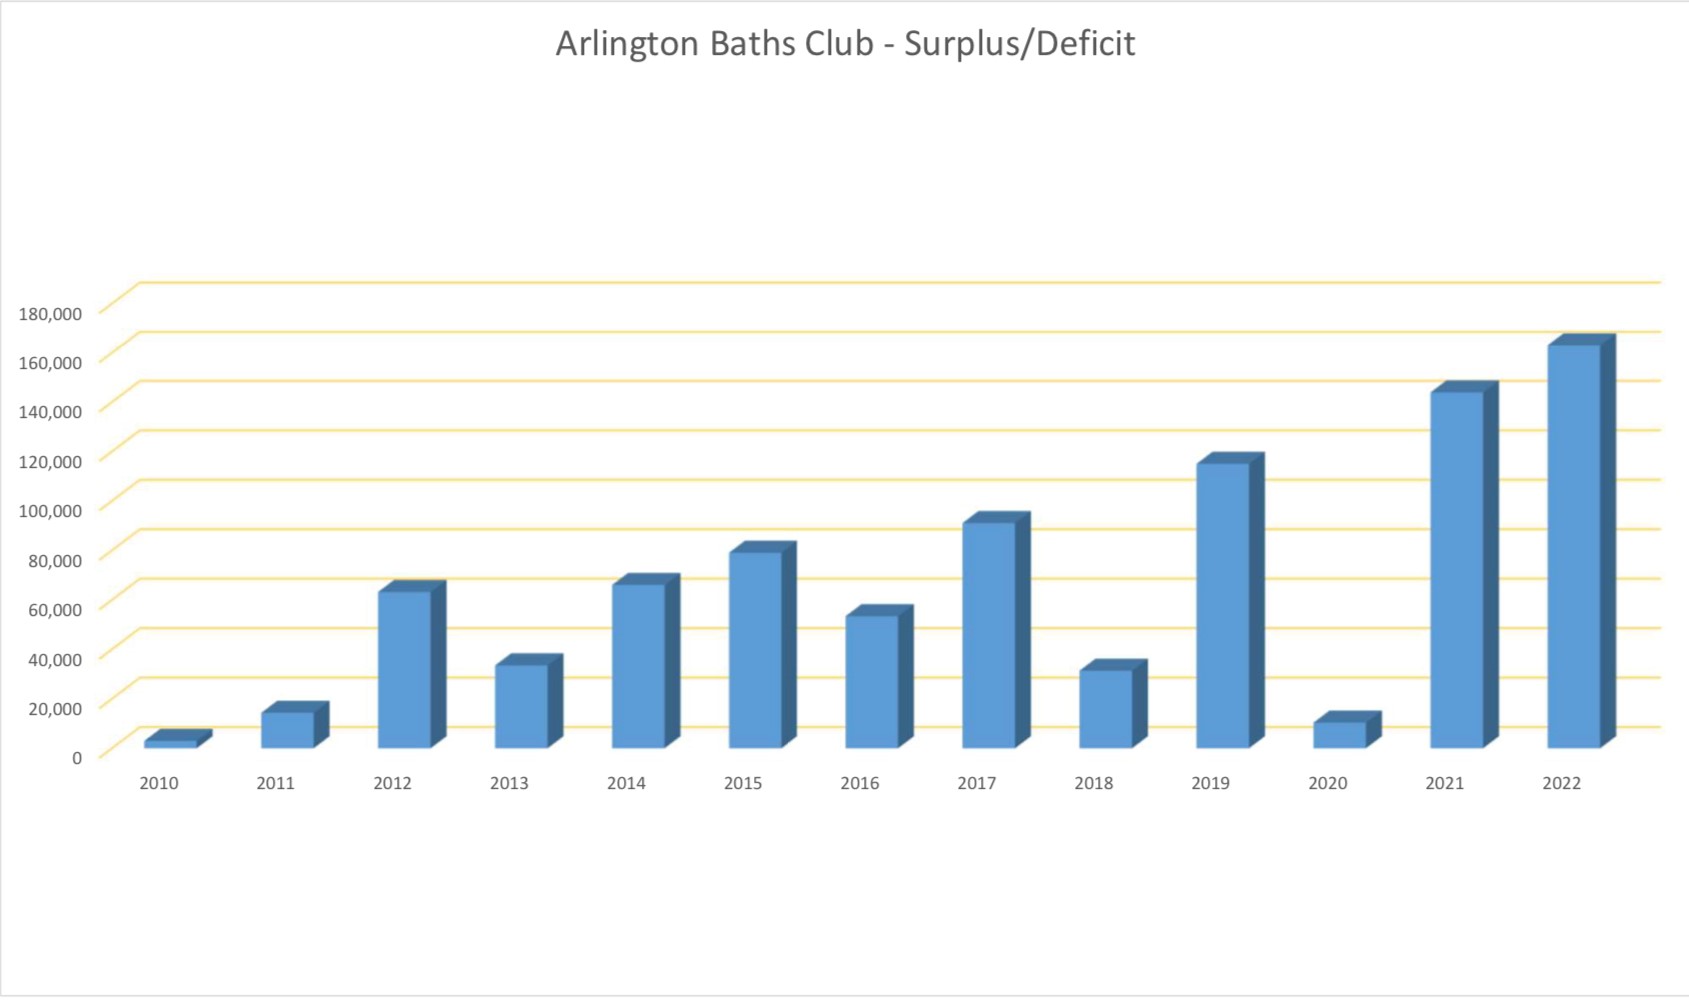 graph showing surplus of arlington baths club since 2000